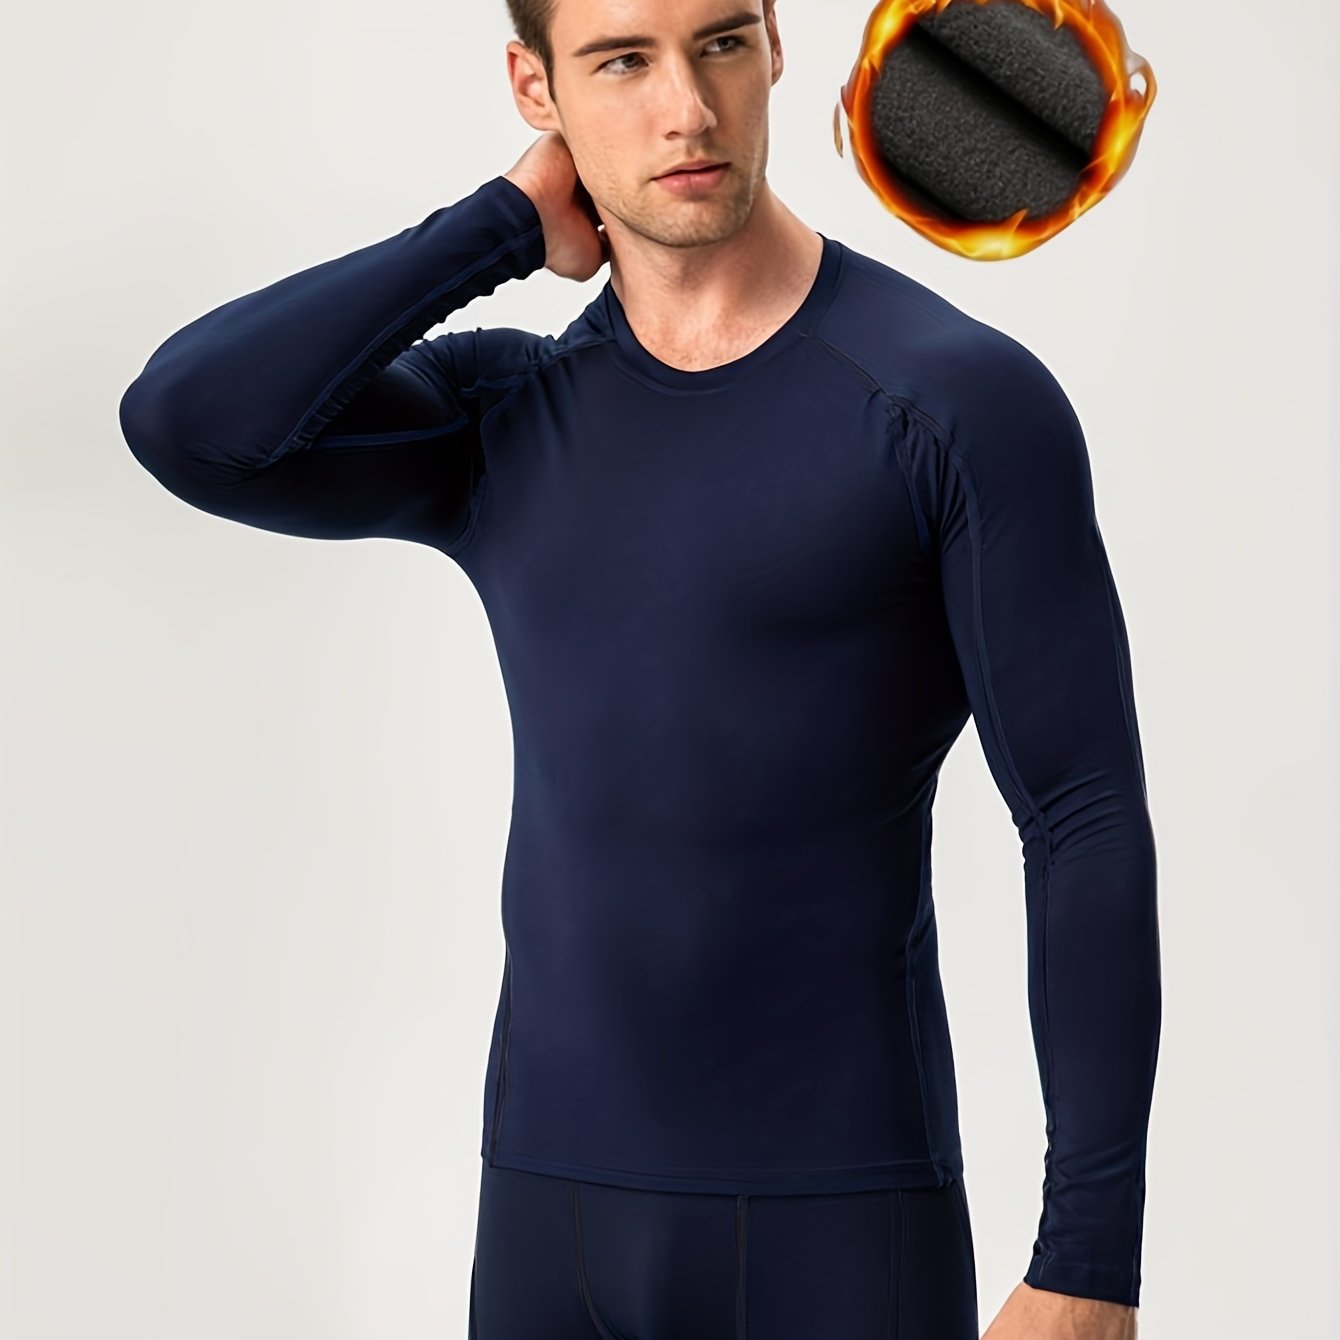 sous-vêtement Thermique Chauffant pour Homme, Couche de Base Chaude doublée  en Polaire pour Le Temps Froid (Piles Non incluses)